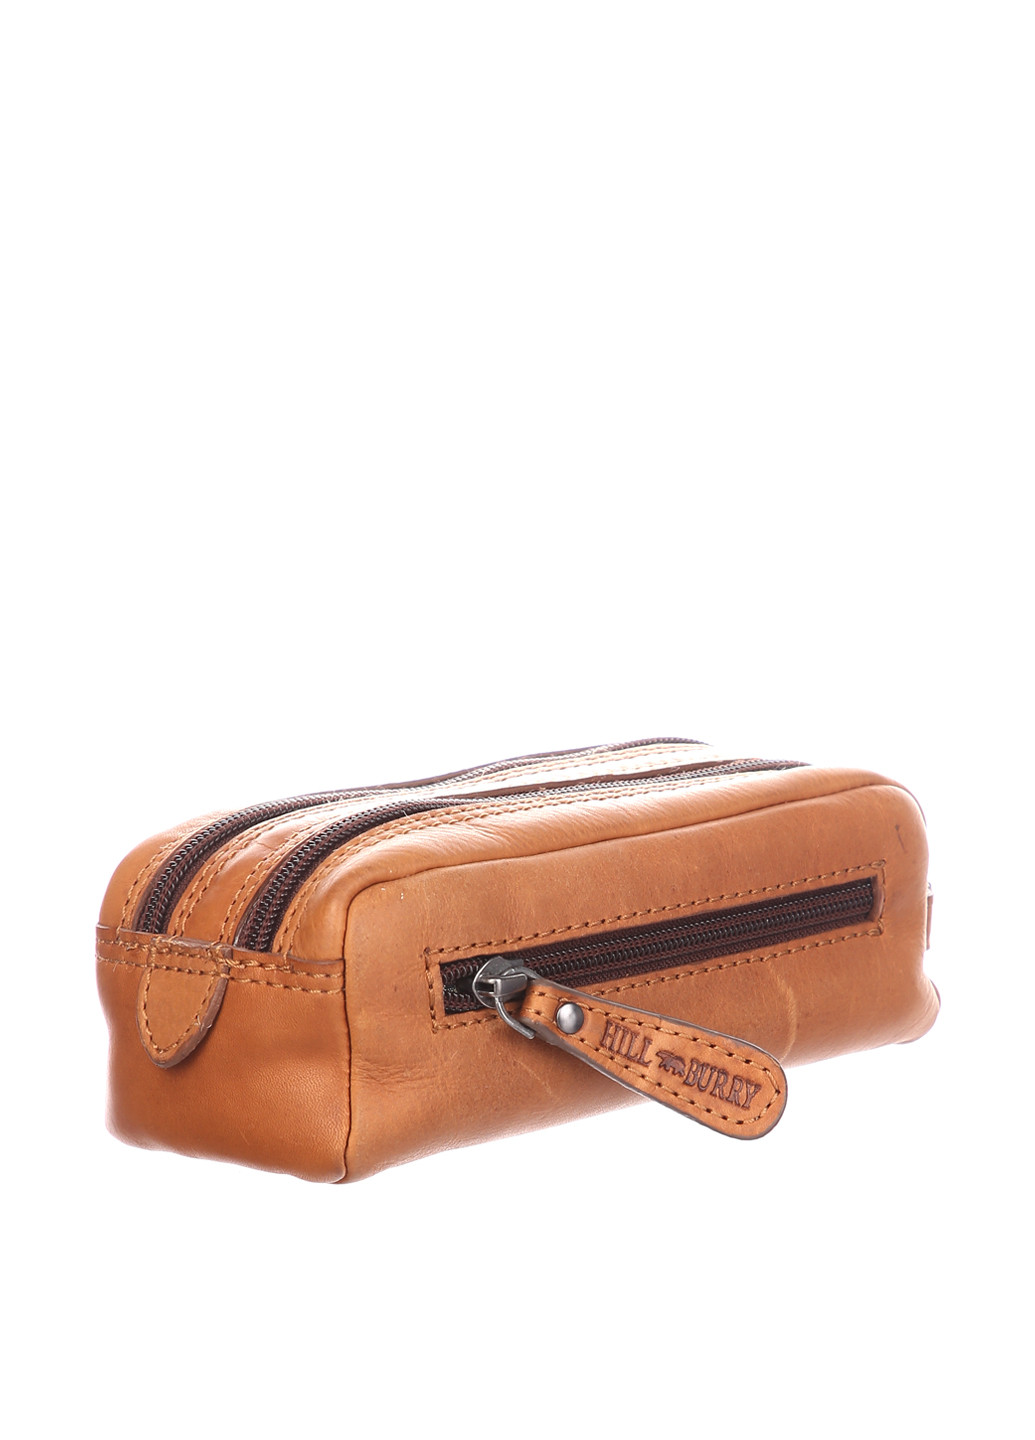 Сумка HILL BURRY сумка-кошелёк логотип светло-коричневая кэжуал